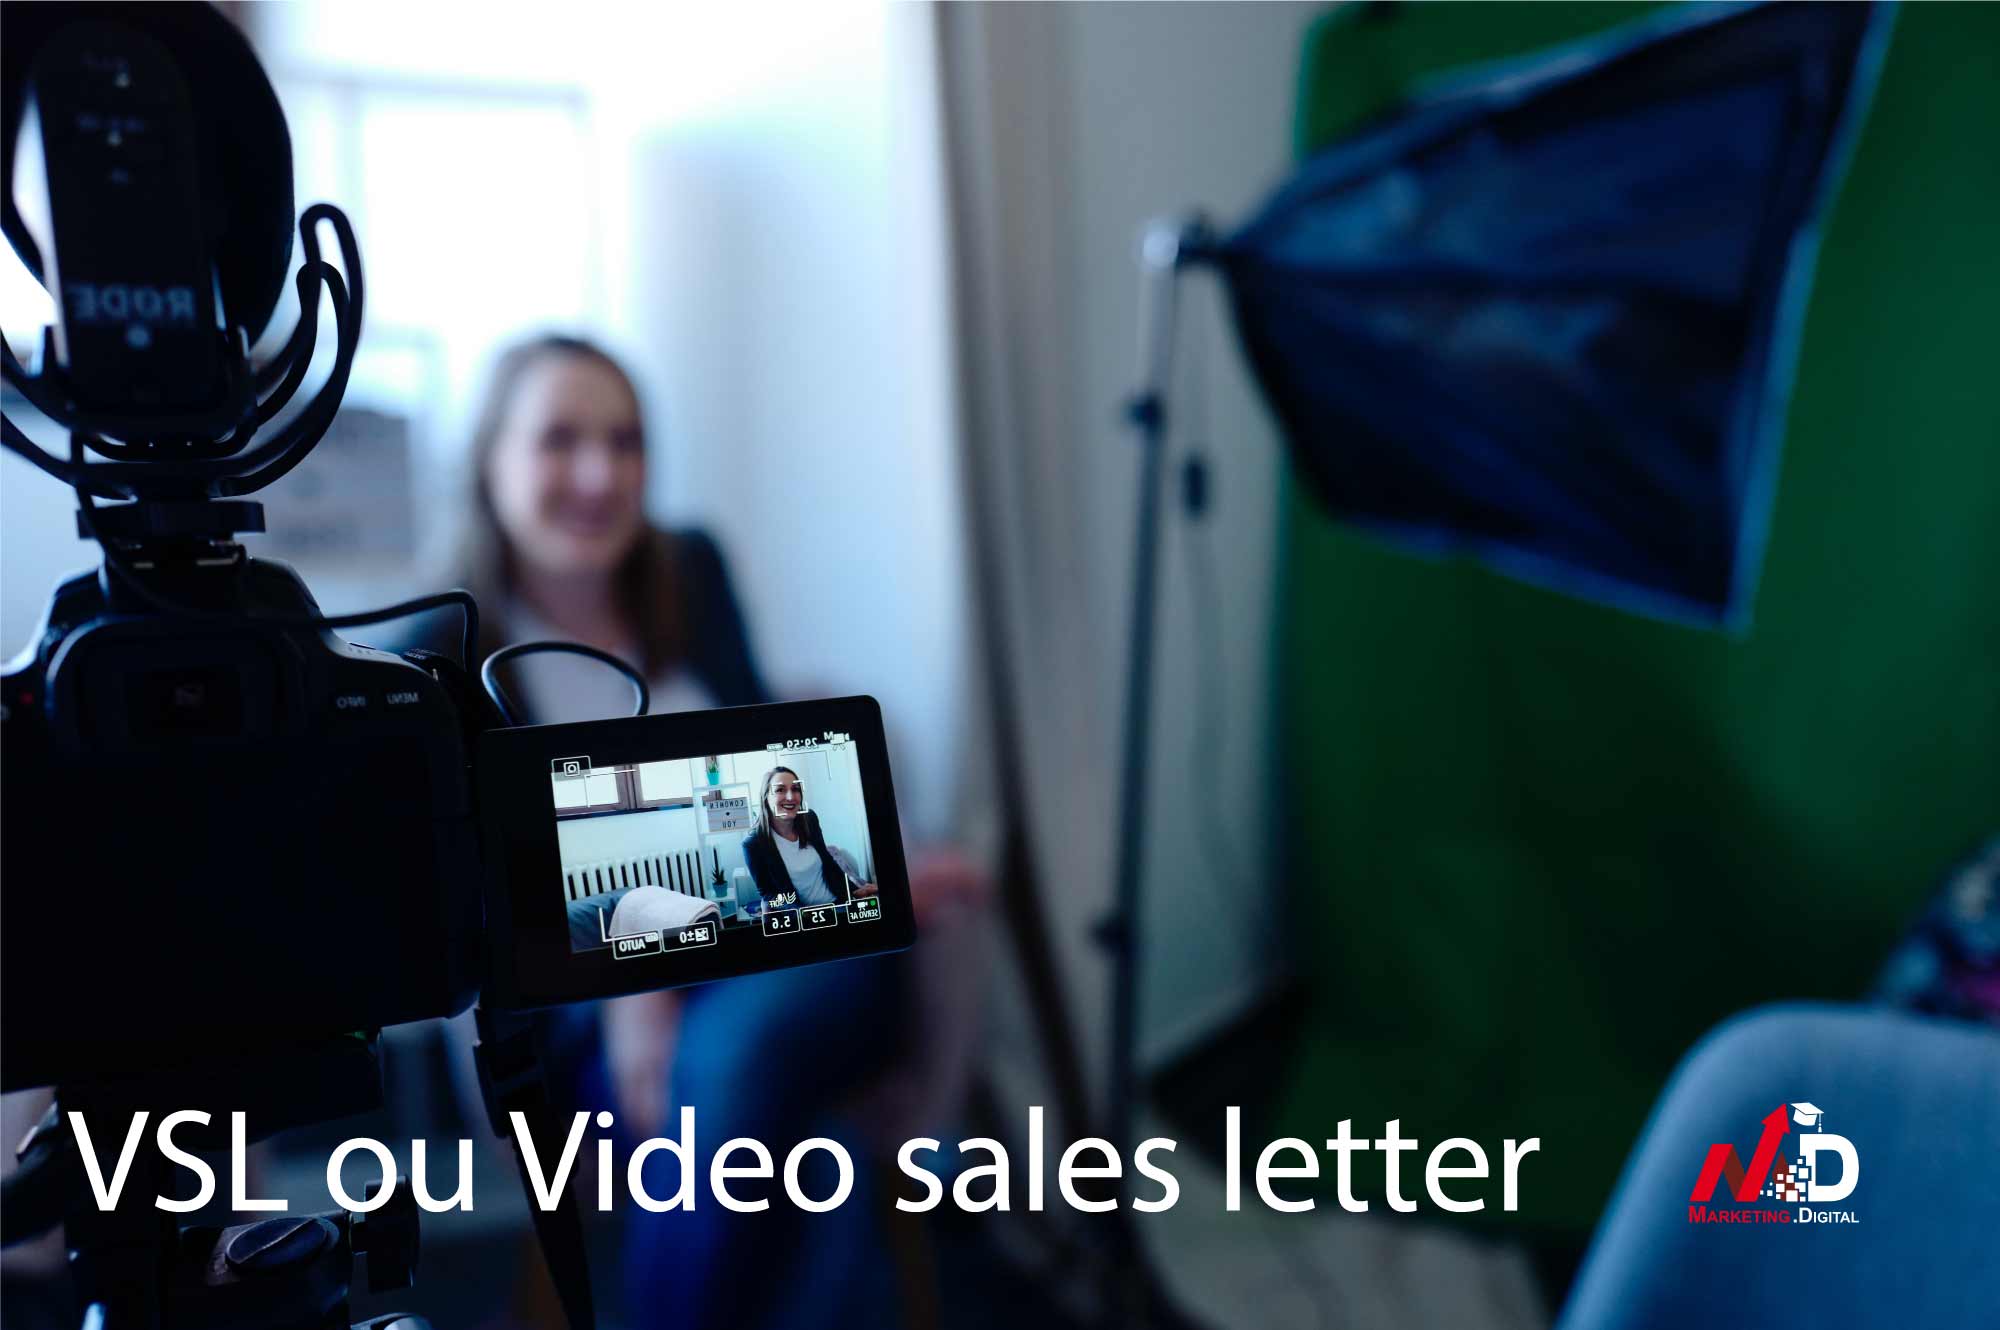 La VSL ou Video sales letter